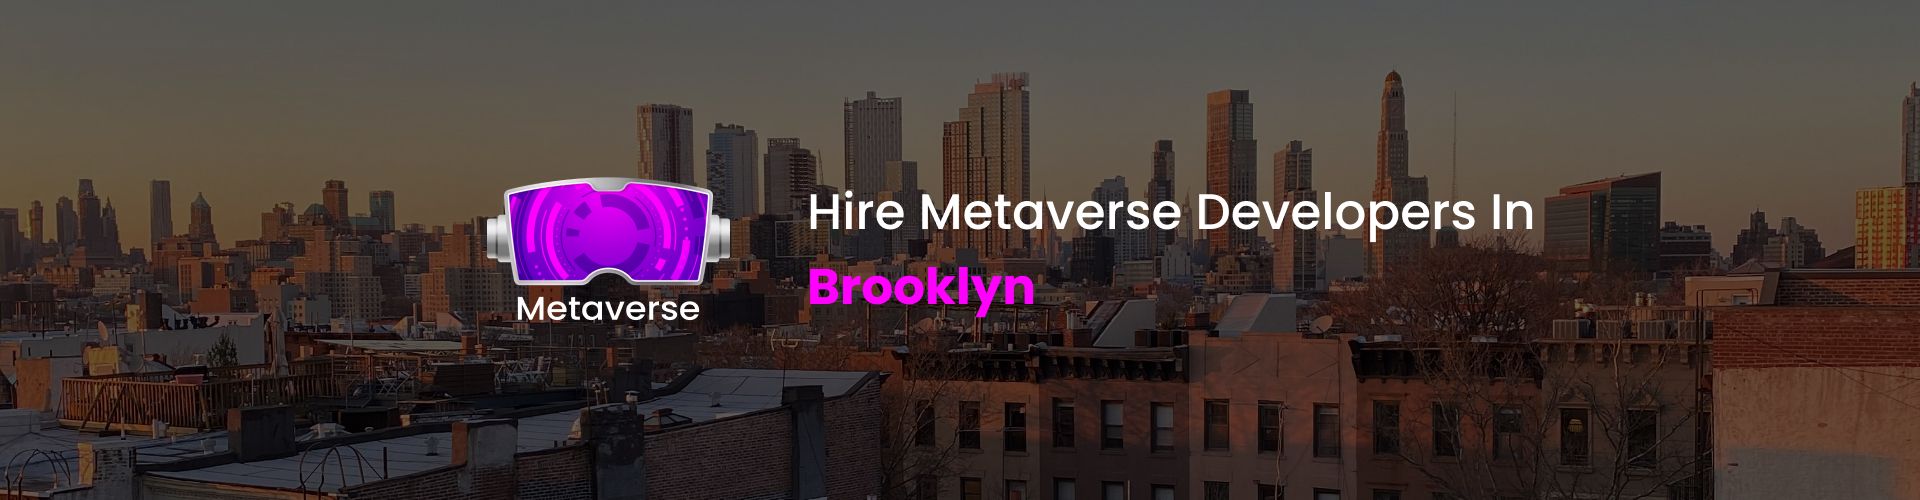 metaverse developers in brooklyn